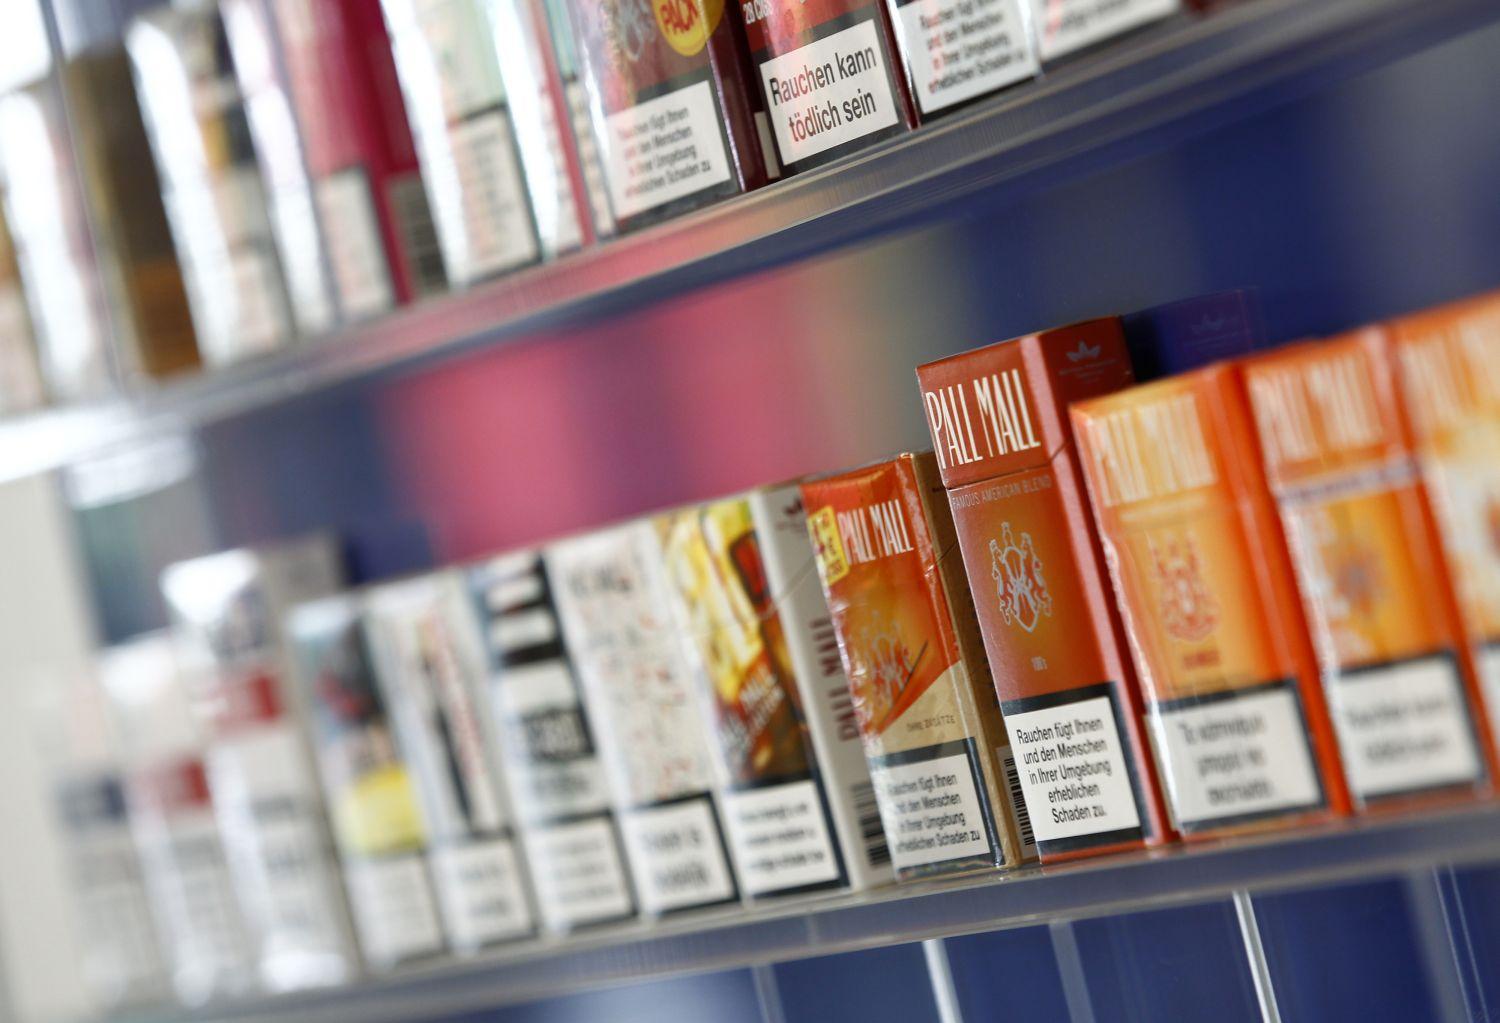 Pall Mall-csomagok a British American Tobacco bayreuth-i gyárában. Nem ez az első eset, hogy a kormány a Continentalt akarja helyzetbe hozni